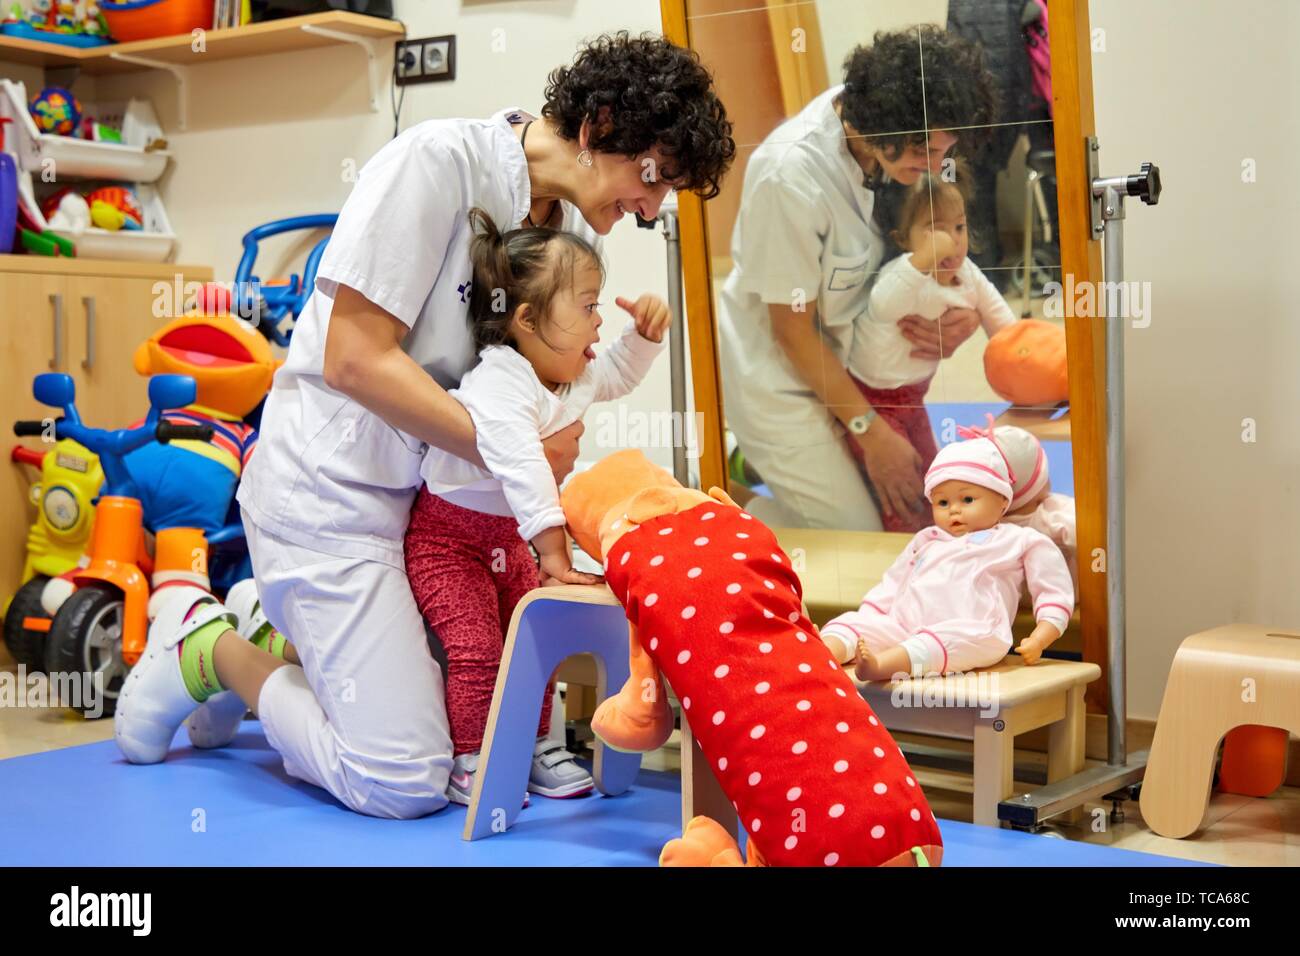 Physiotherapist teaching a girl with Down syndrome to stand up,Rehabilitation, Amara Berri Health Center building, Donostia, San Sebastian, Gipuzkoa, Stock Photo